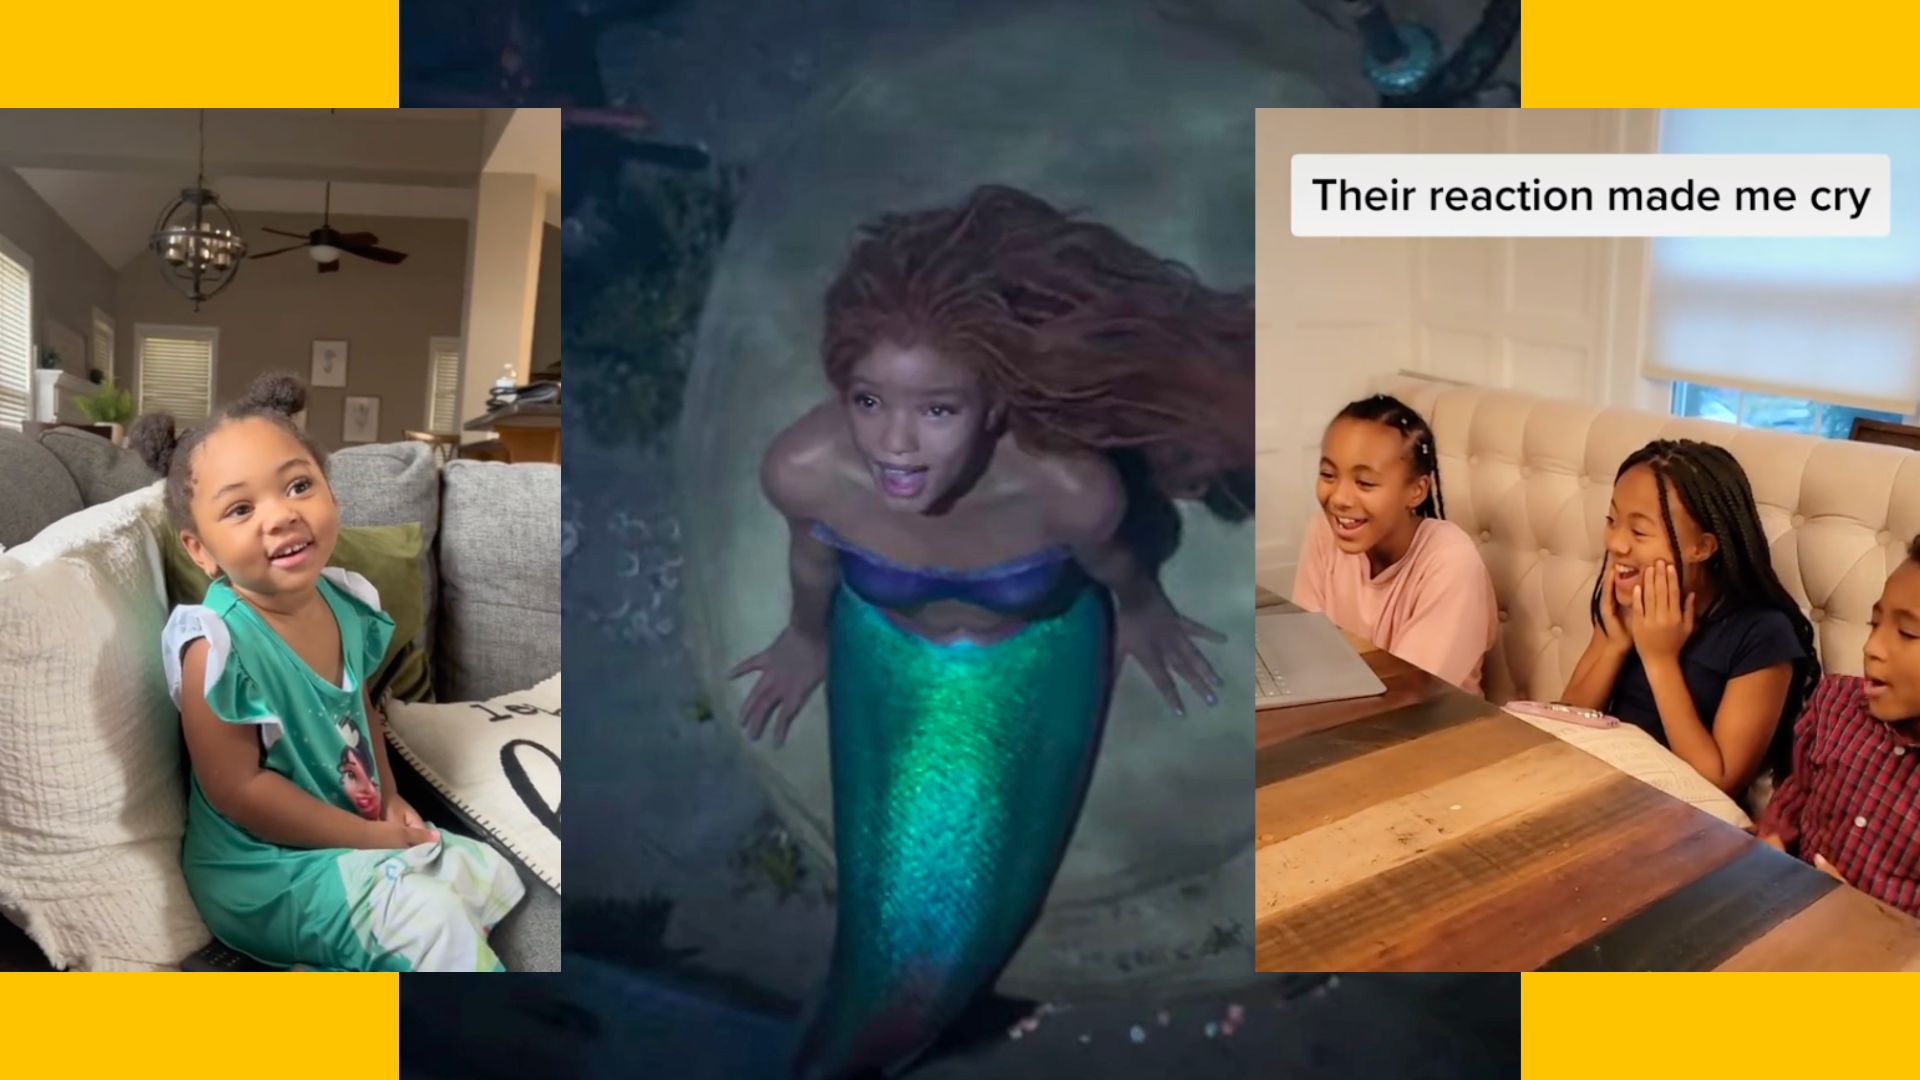 Dans le nouveau film «La petite sirène», Ariel ne sera pas rousse